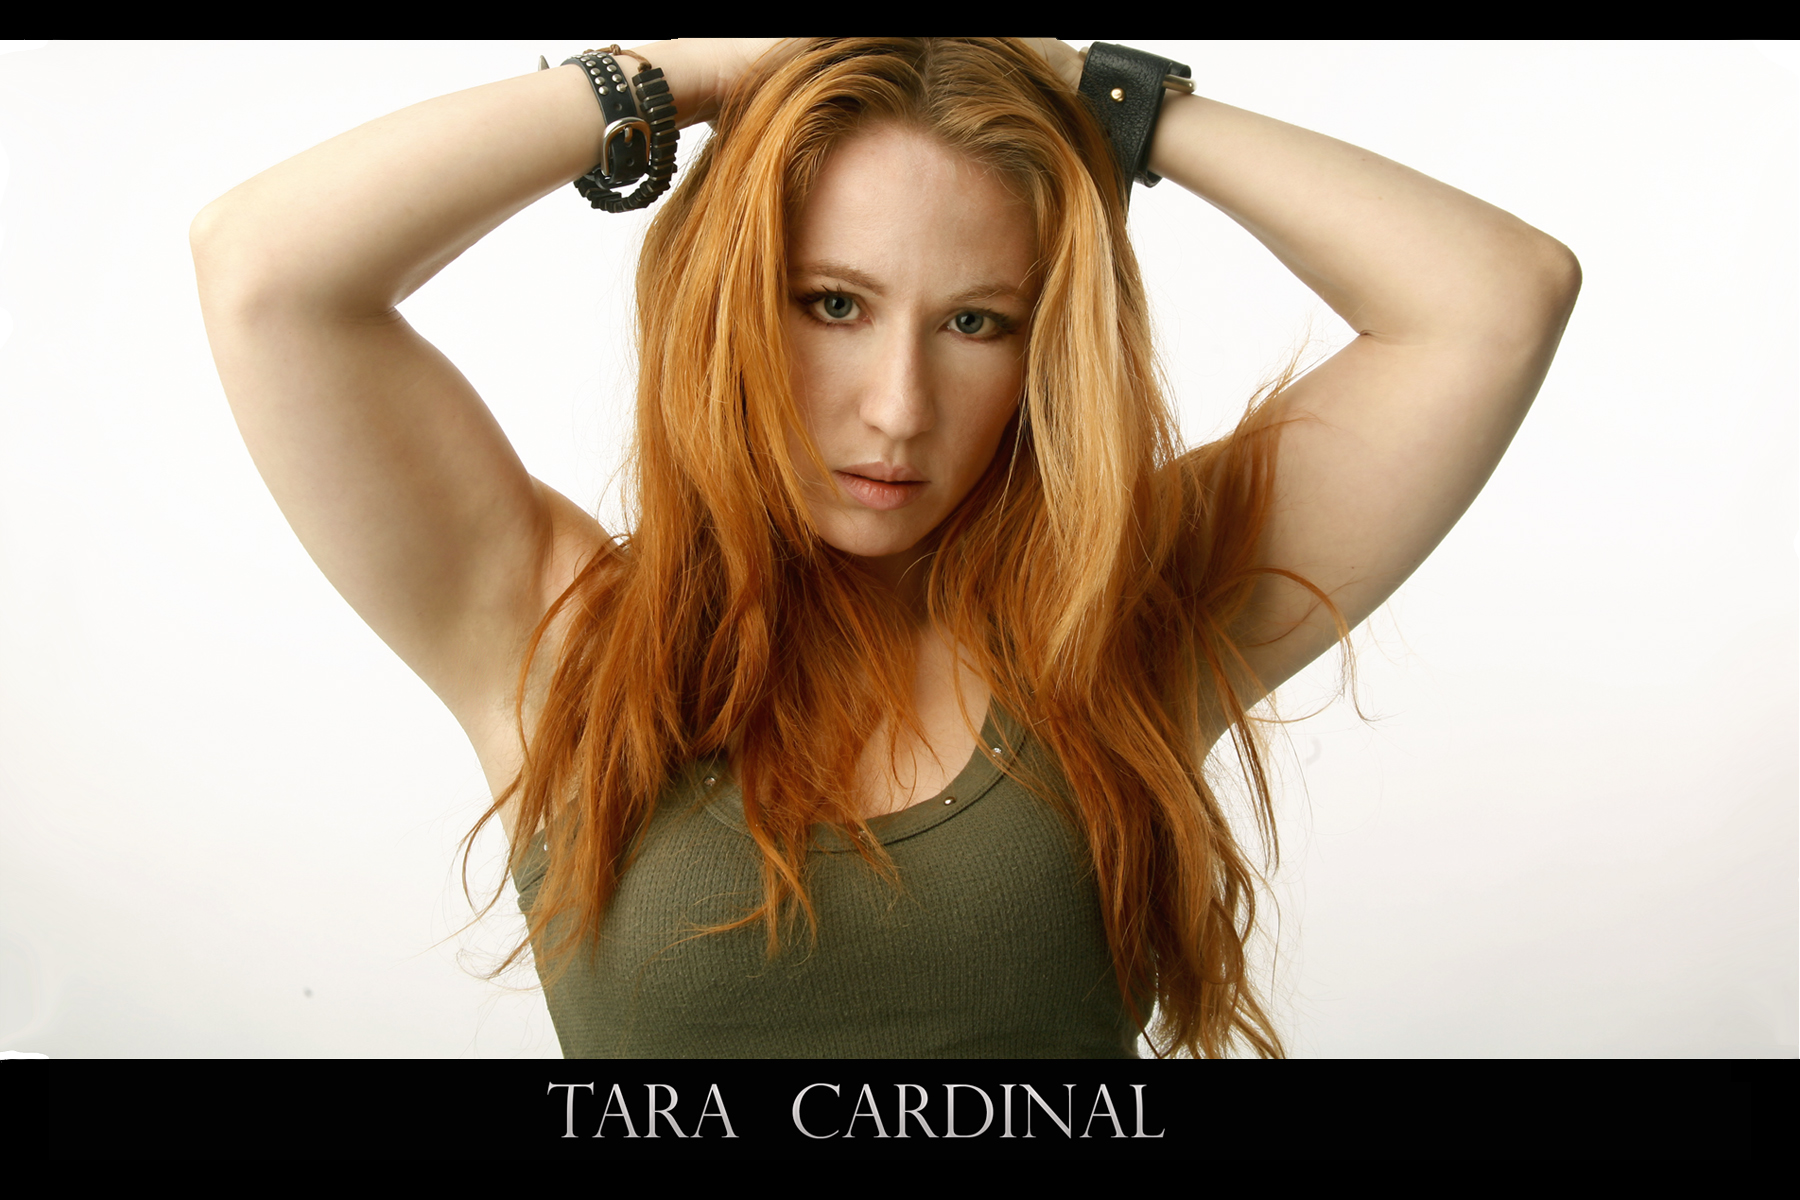 Tara Cardinal